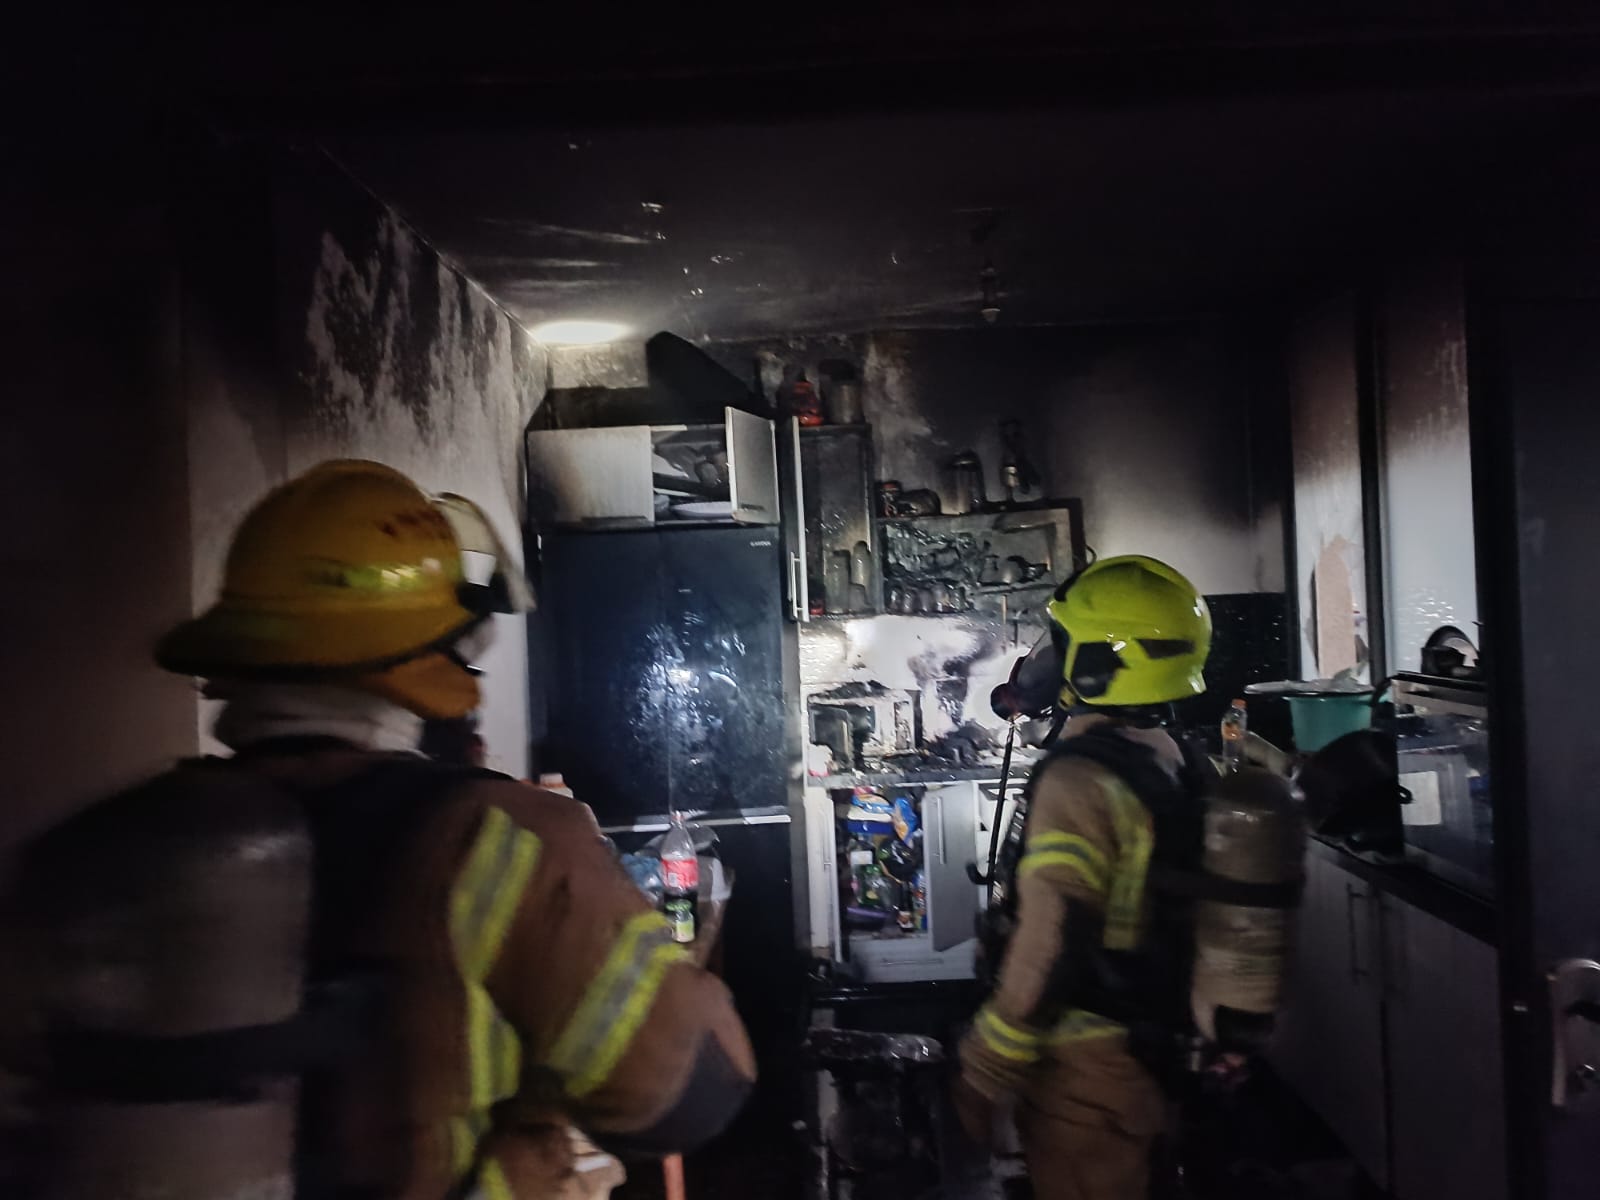  اللد: حريق داخل أحد البيوت في حي المحطة دون وقوع اصابات